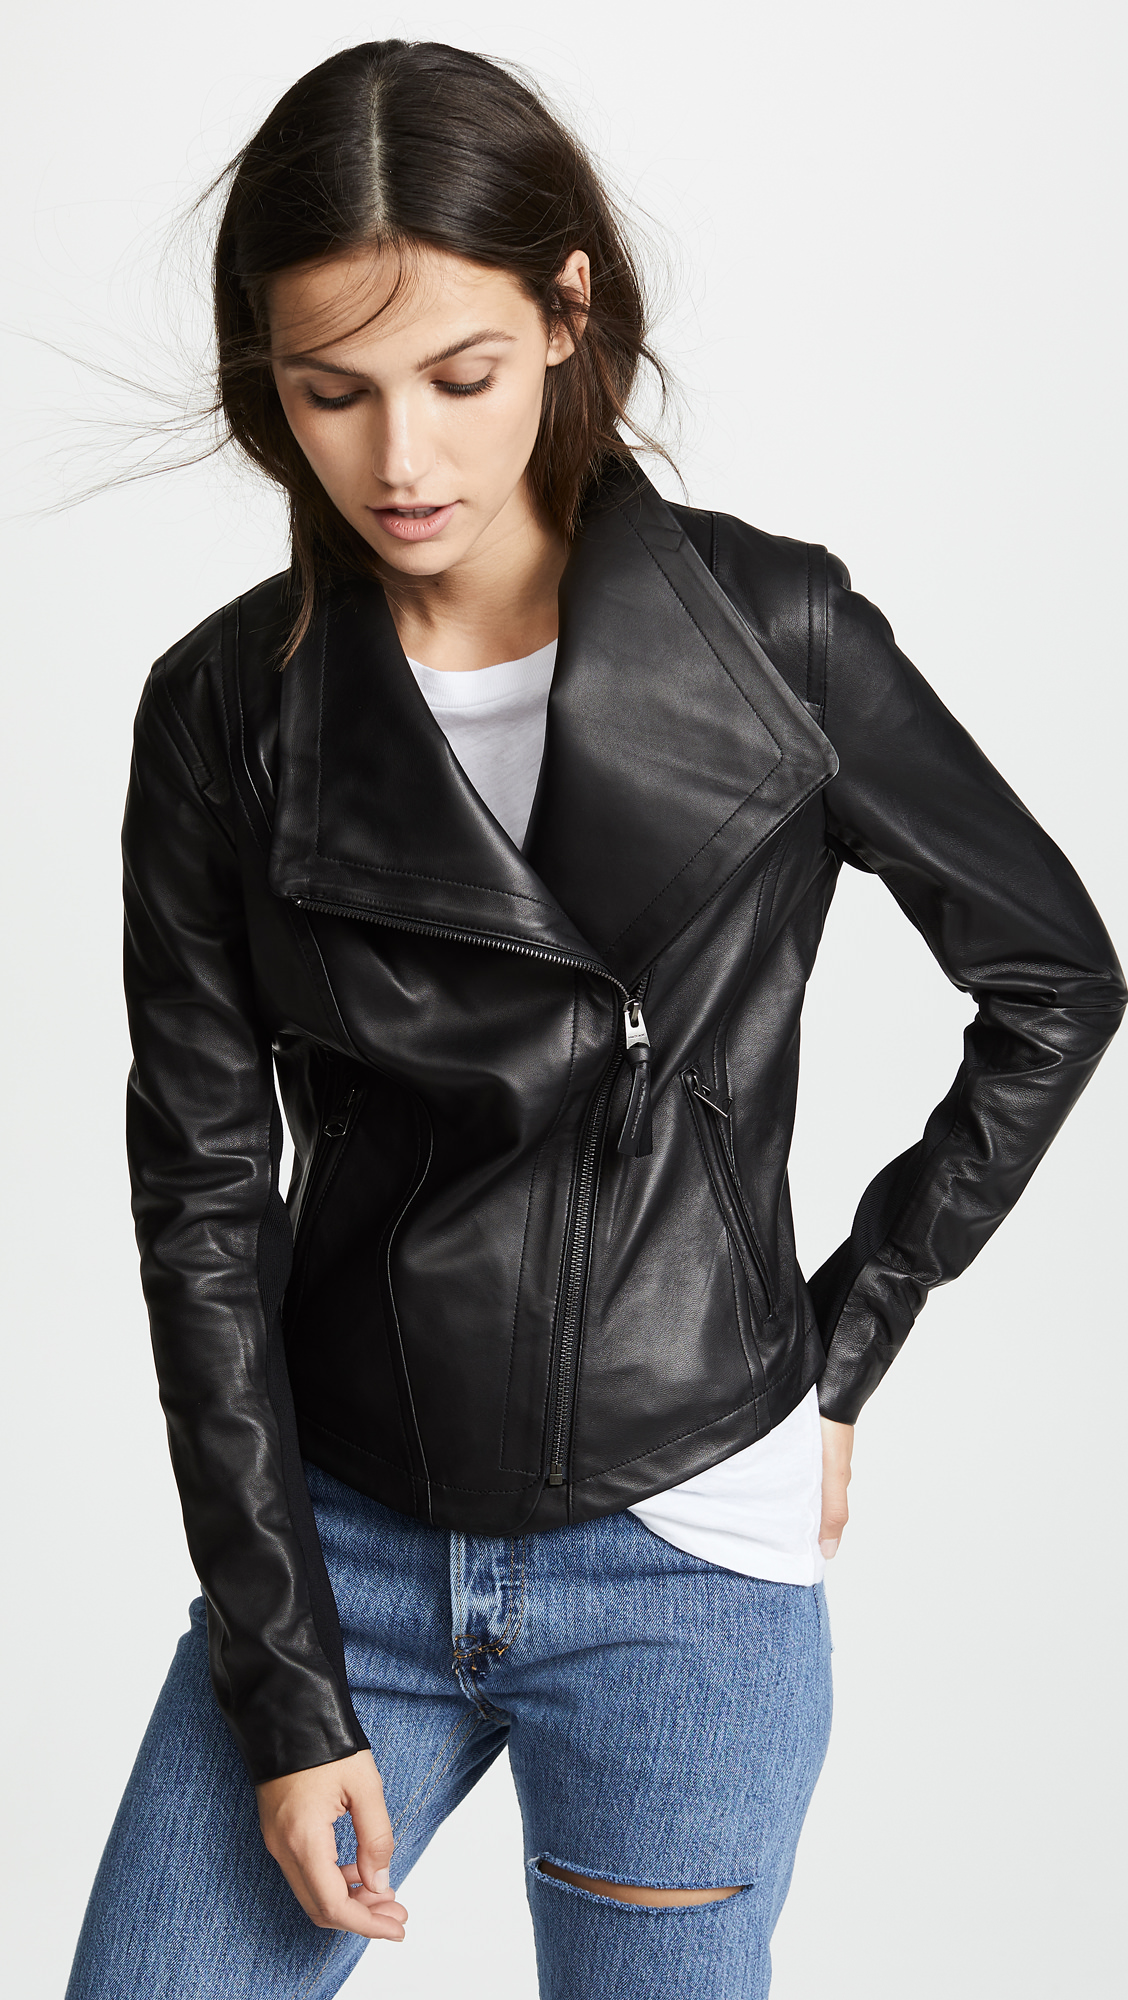 Mackage Pina Leather Jacket